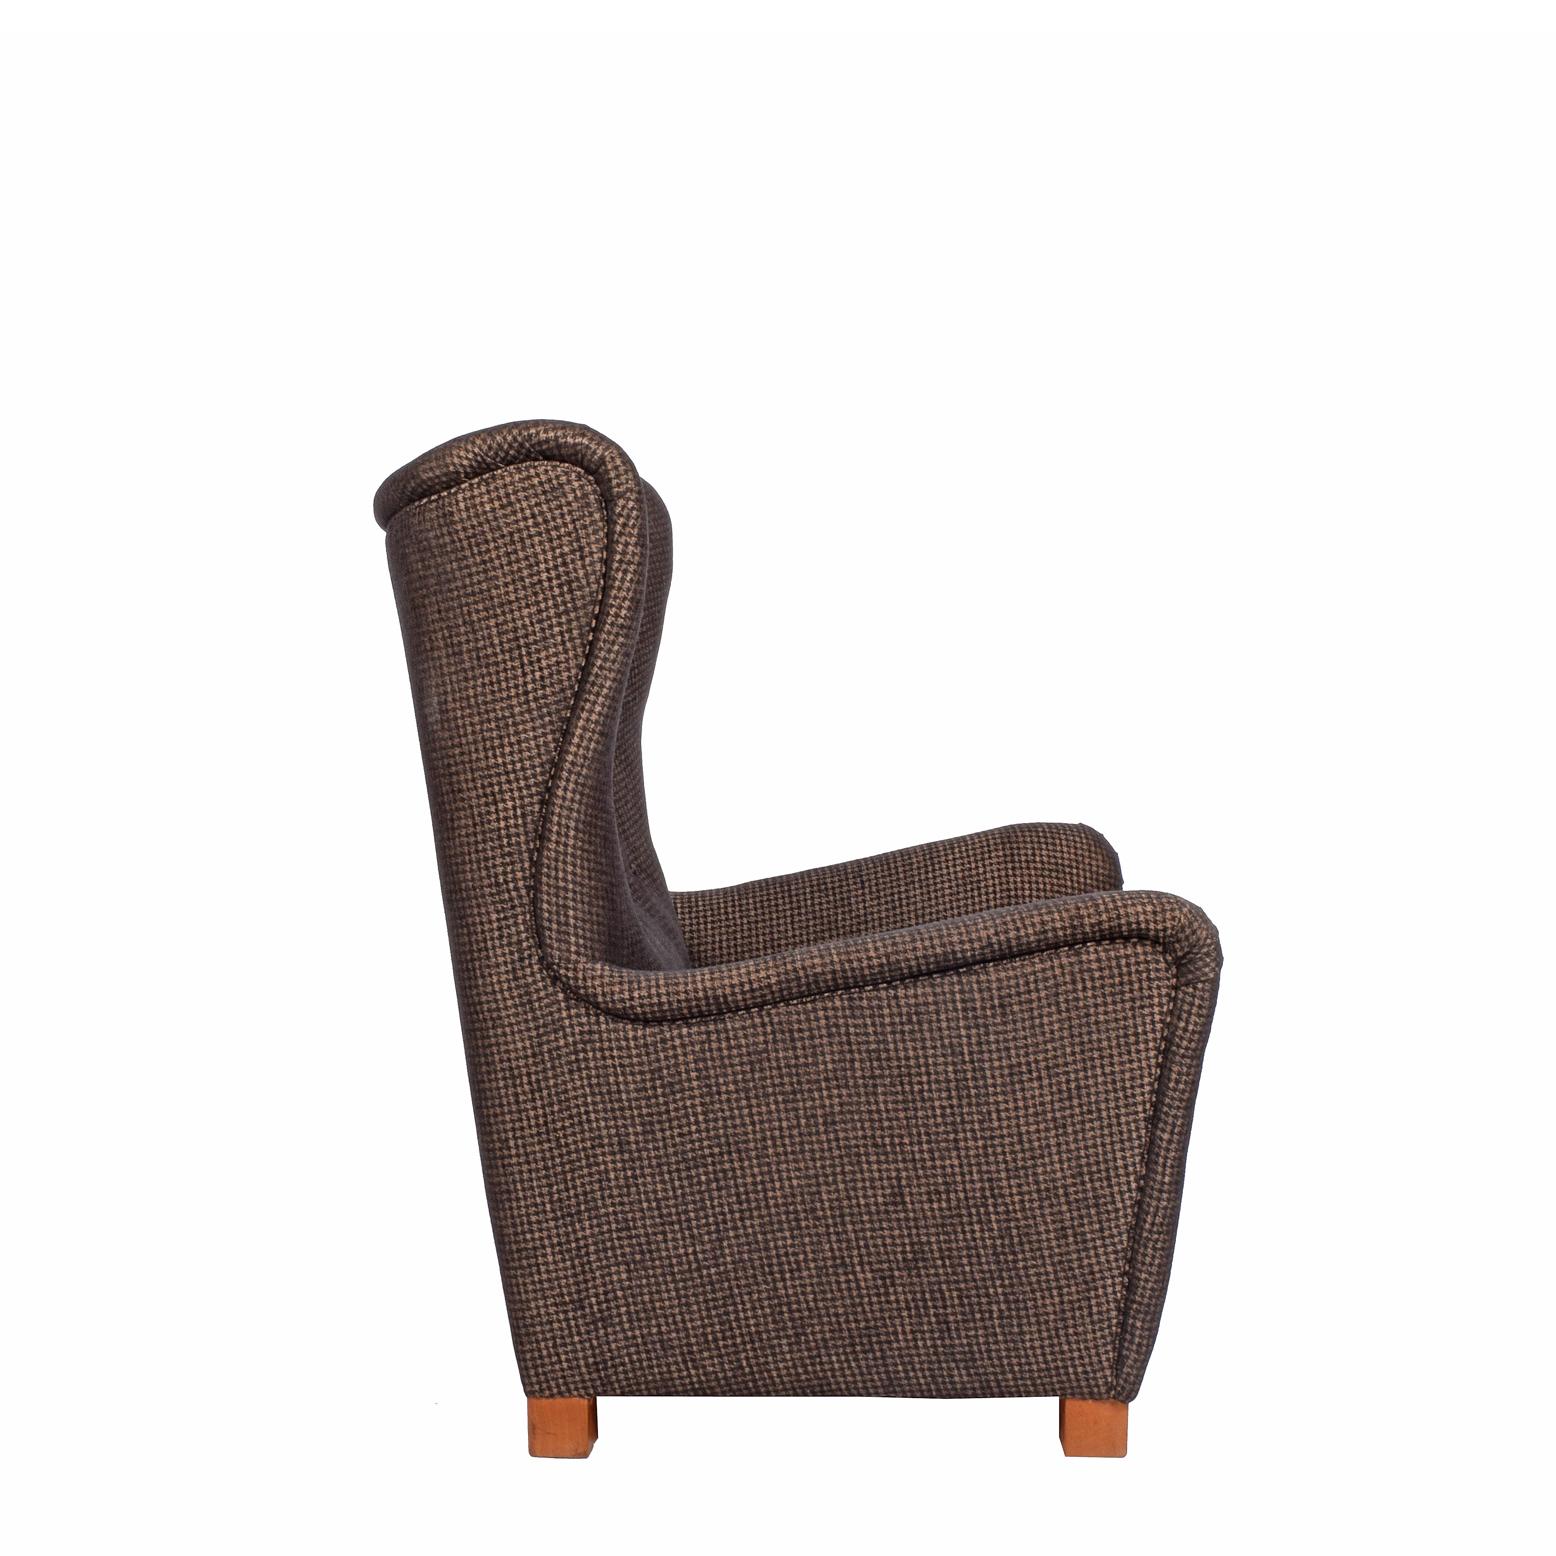 1942 Fritz Hansen Lounge Chair Modell #1672 (Dänisch)